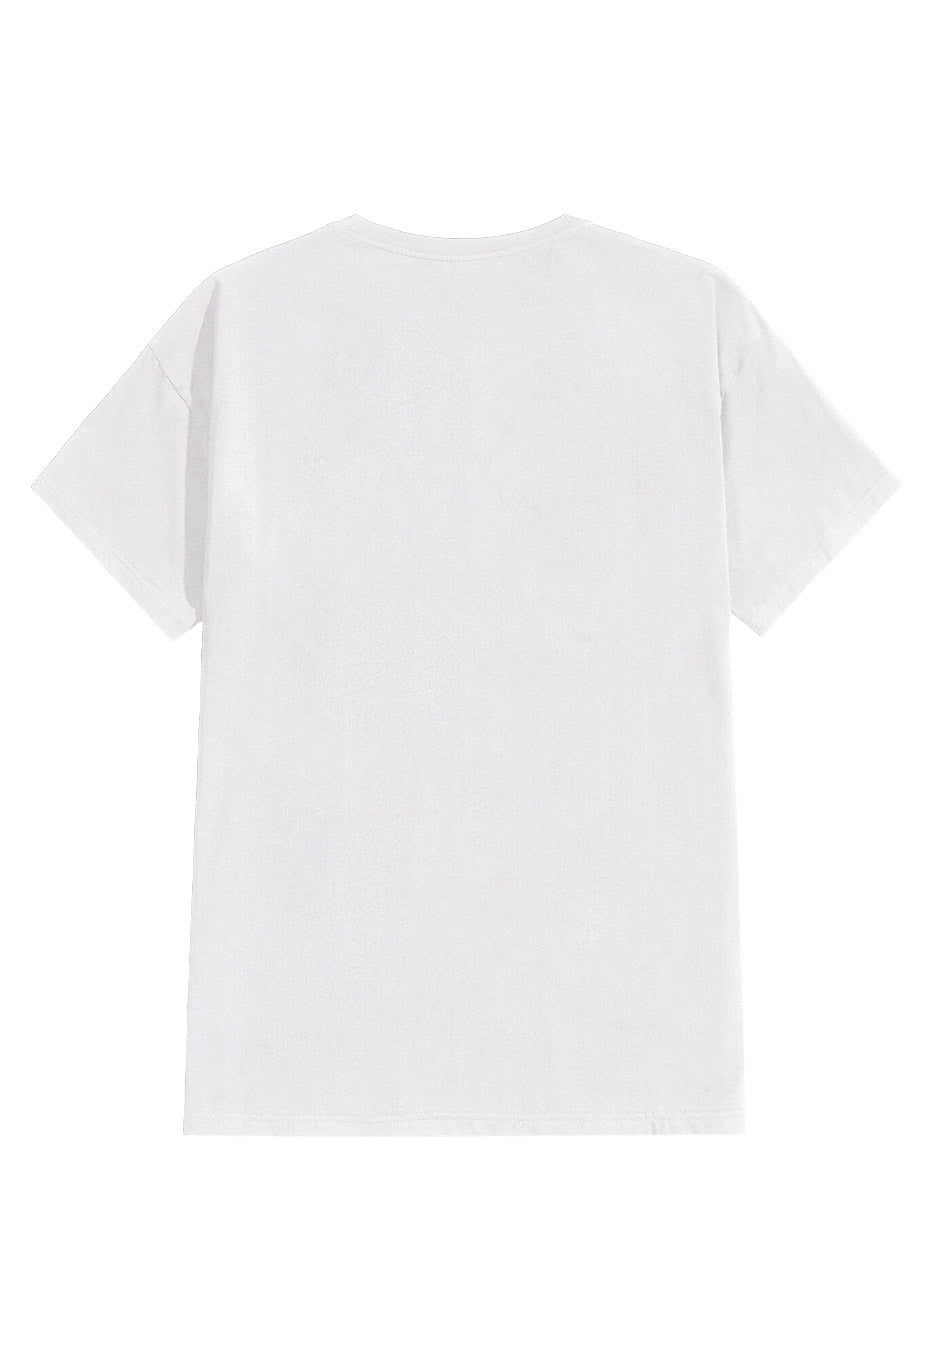 Gojira - Whale Sun Moon White - T-Shirt